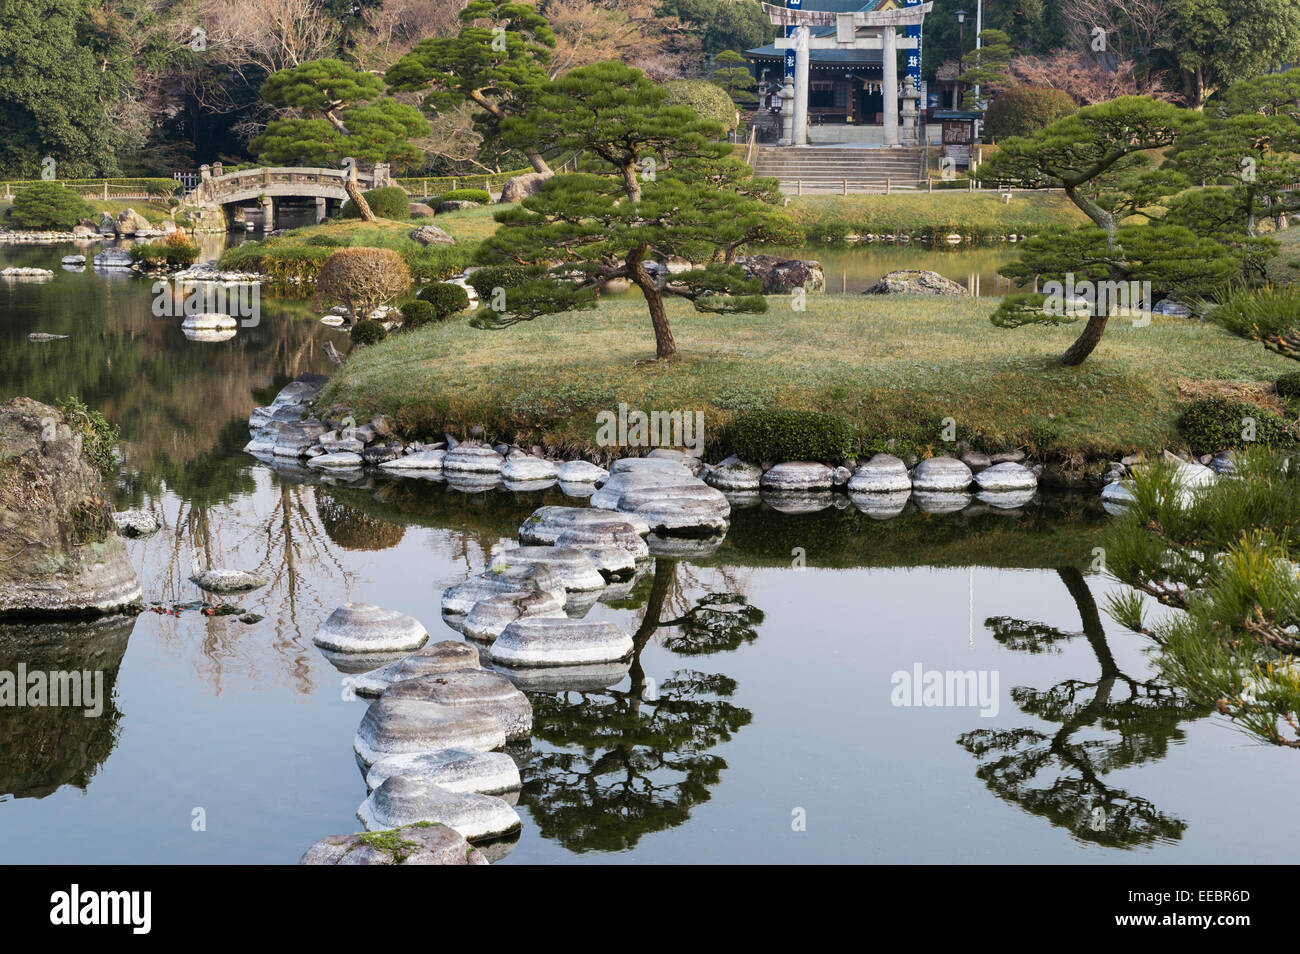 Kumamoto, Kyushu in Giappone. La passeggiata giardino di Suizen-ji Joju-en, iniziata nel 1632. Lo stagno con il Izumi Santuario in background Foto Stock